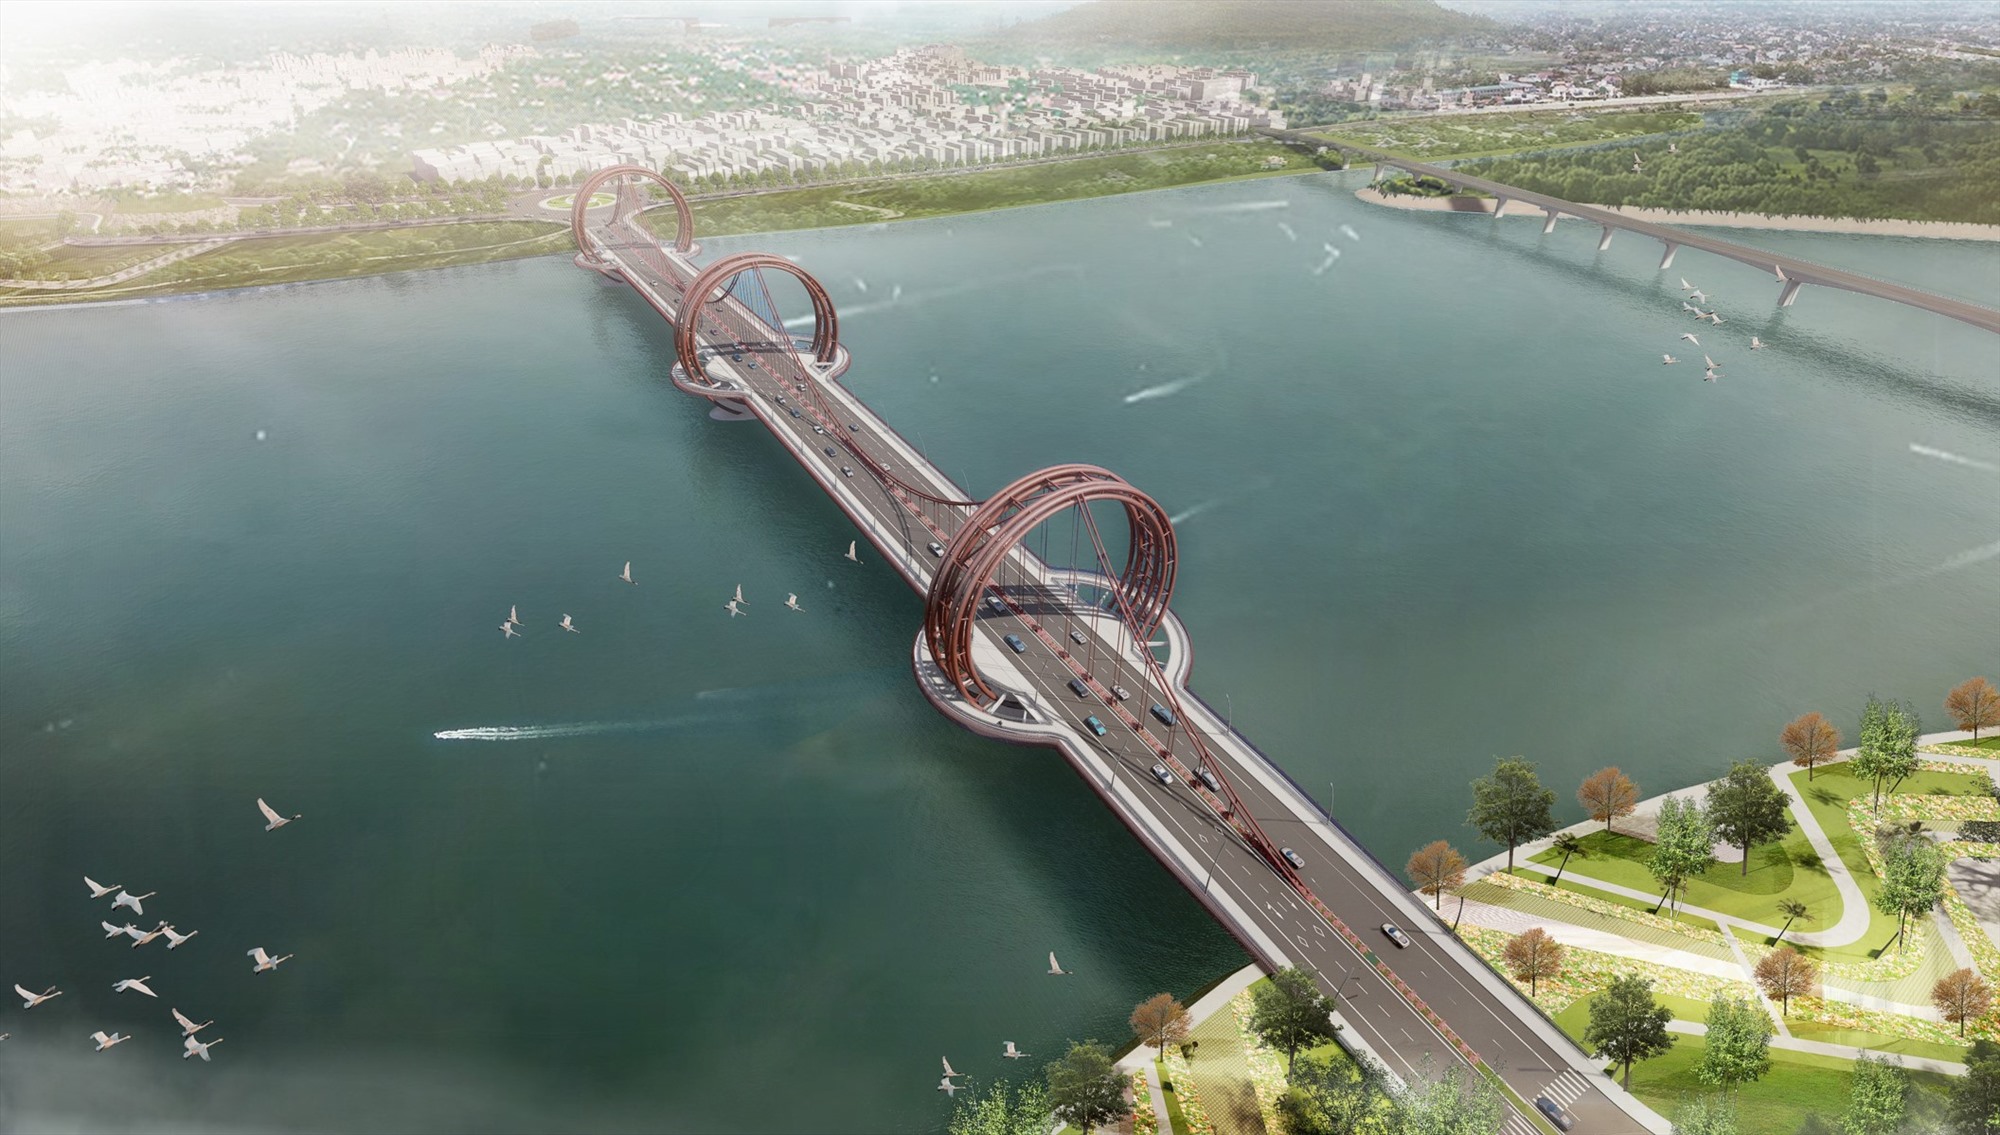 Cầu Trà Khúc 1 thiết kế theo phương án kiến trúc “Dấu ấn sông Trà“. Ảnh: Ban Quản lý dự án Đầu tư xây dựng các công trình giao thông tỉnh Quảng Ngãi